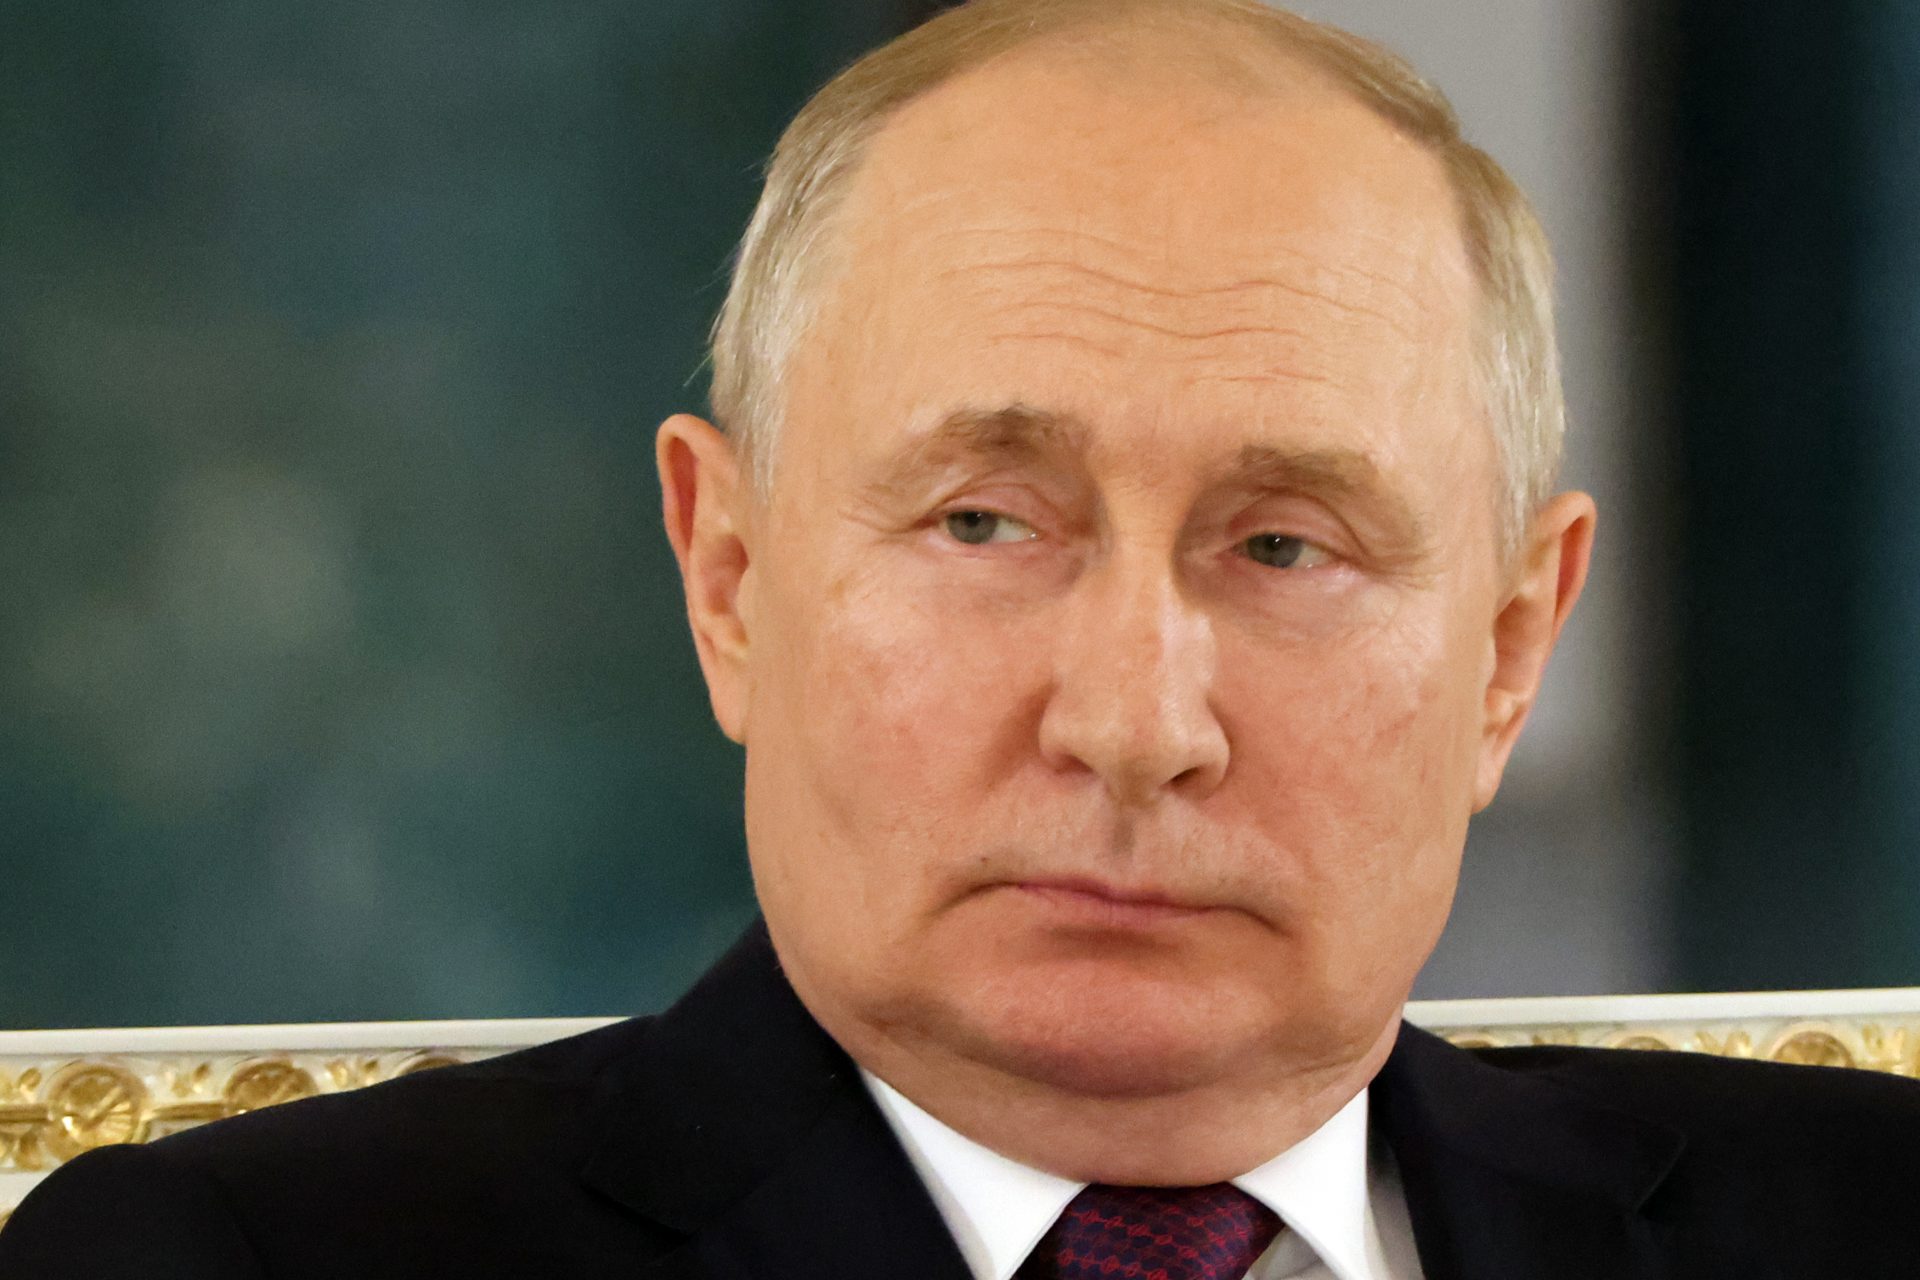 Faire attendre indéfiniment les dirigeants du monde : tel est le coup de force politique de Poutine